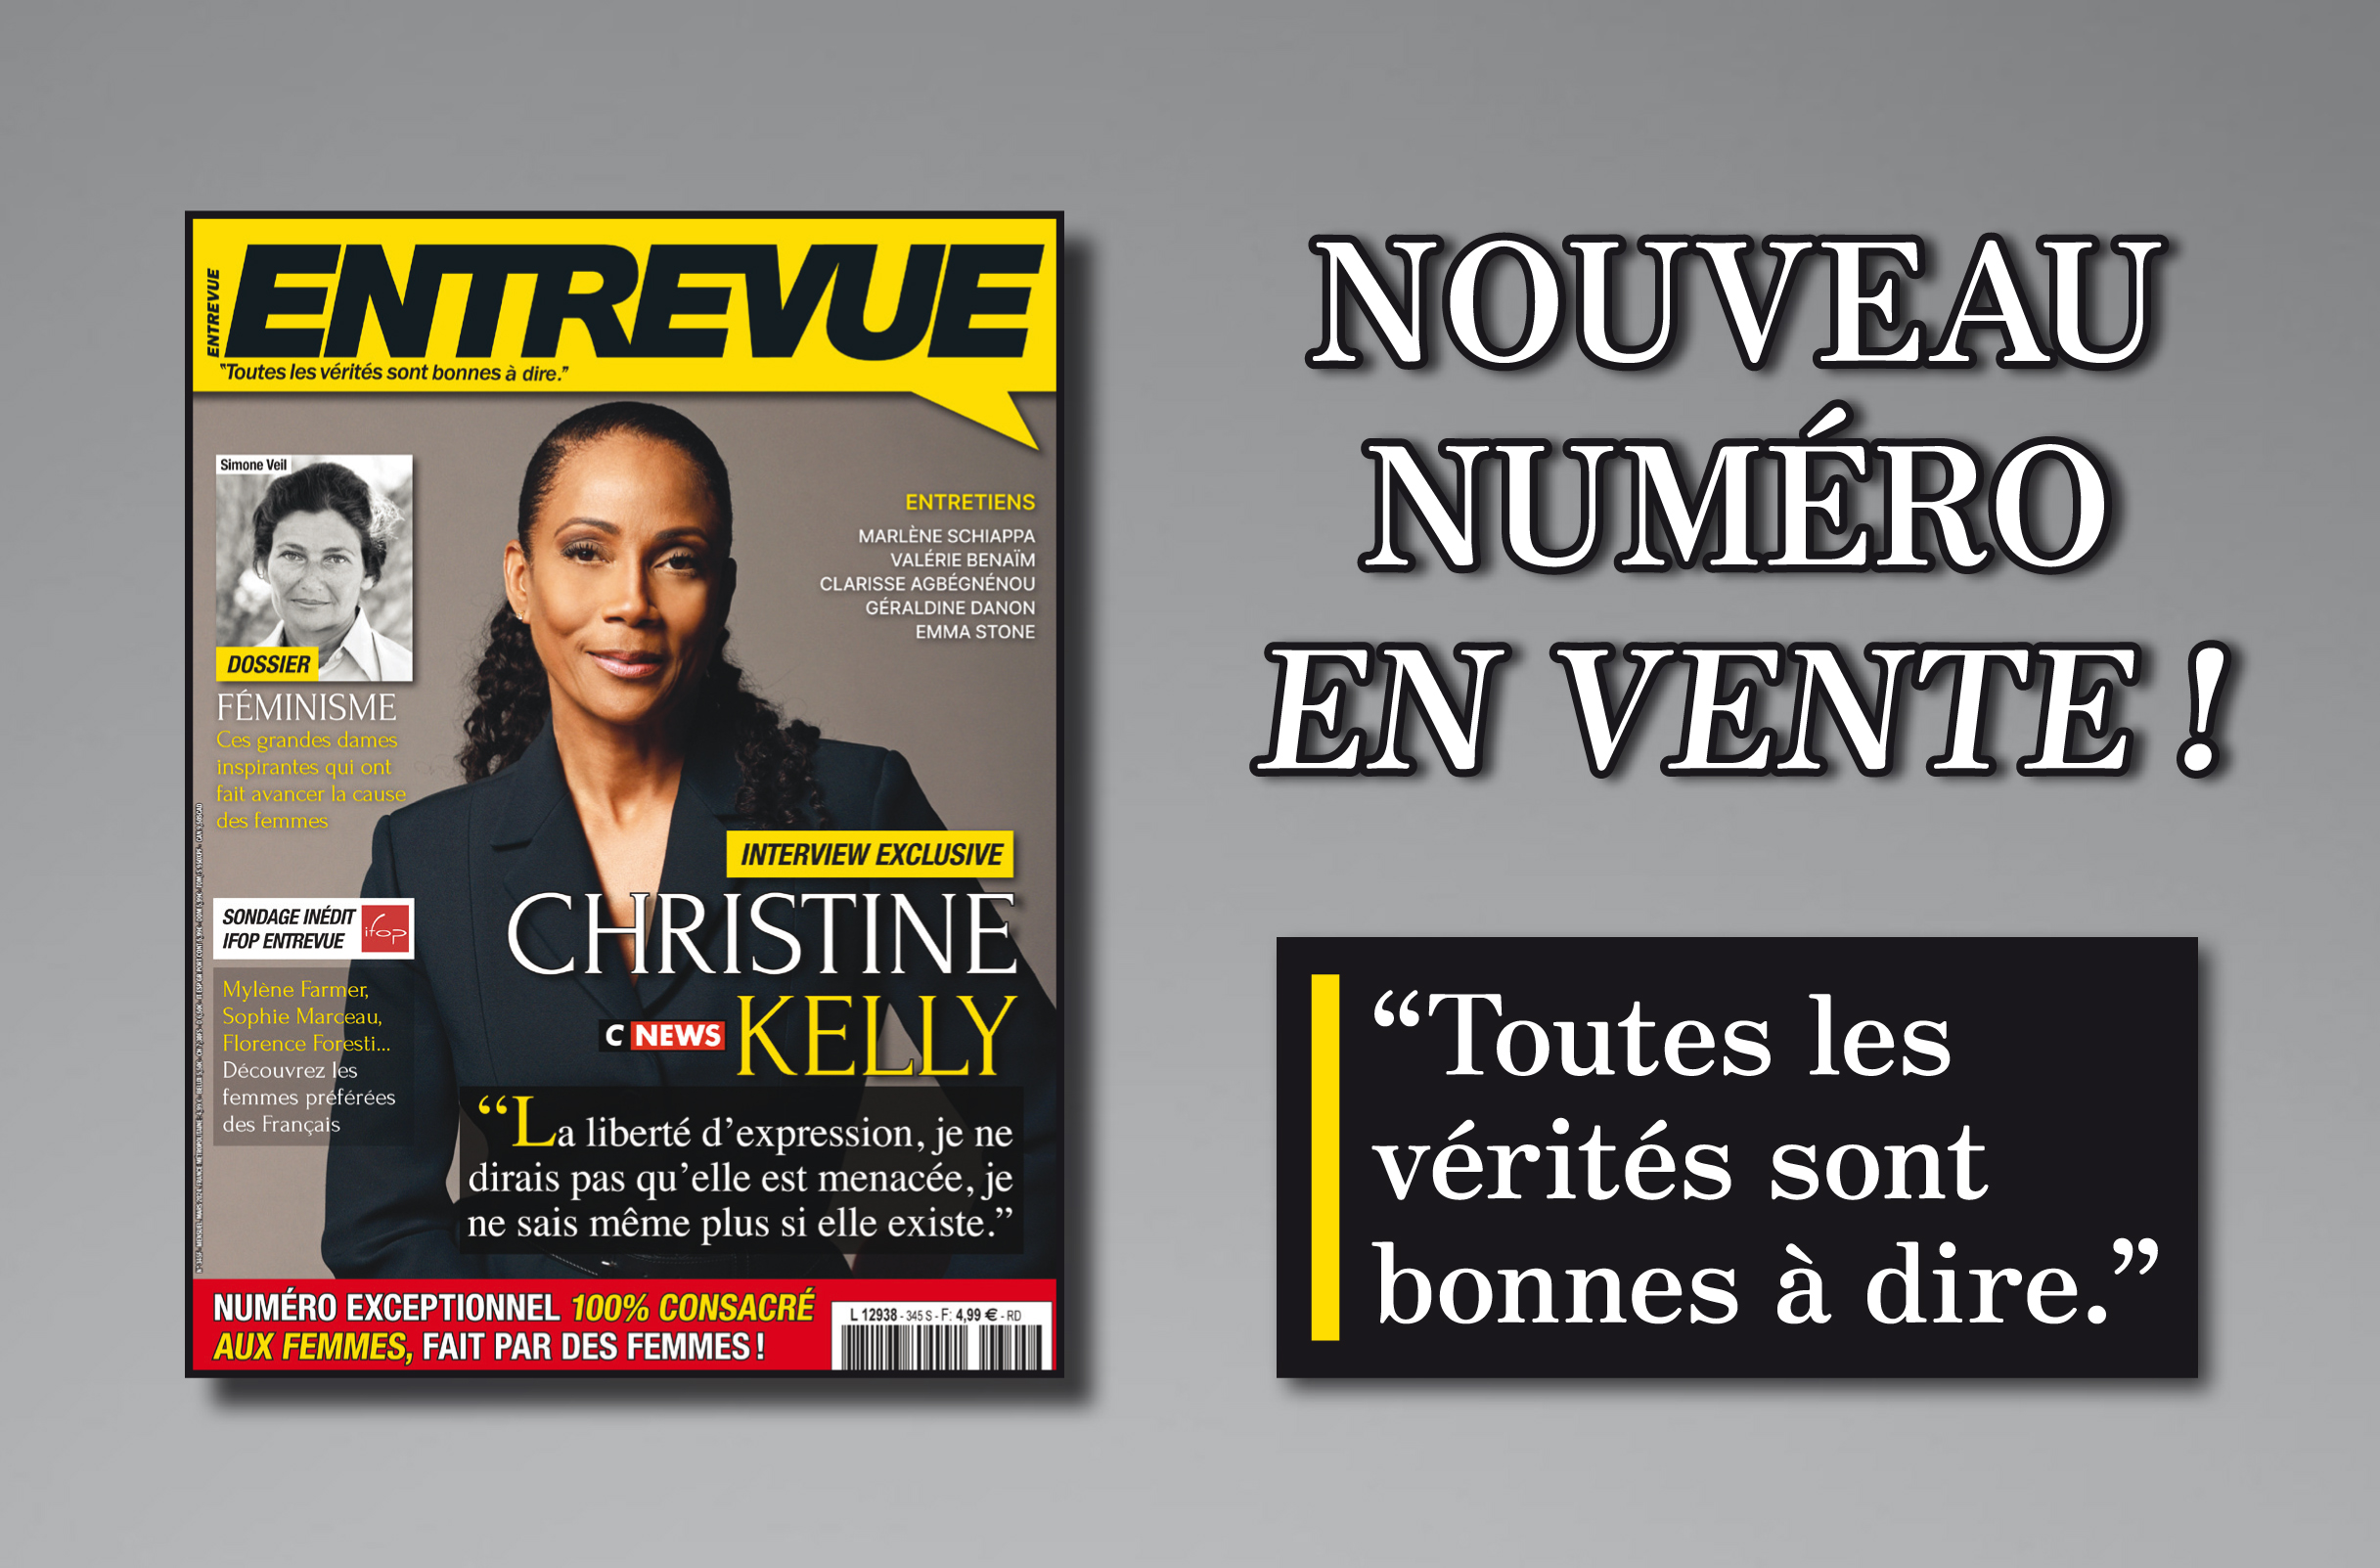 La liberté d’expression menacée en France? Entrevue publie un numéro exceptionnel consacré aux femmes et fait à 100% par des femmes!